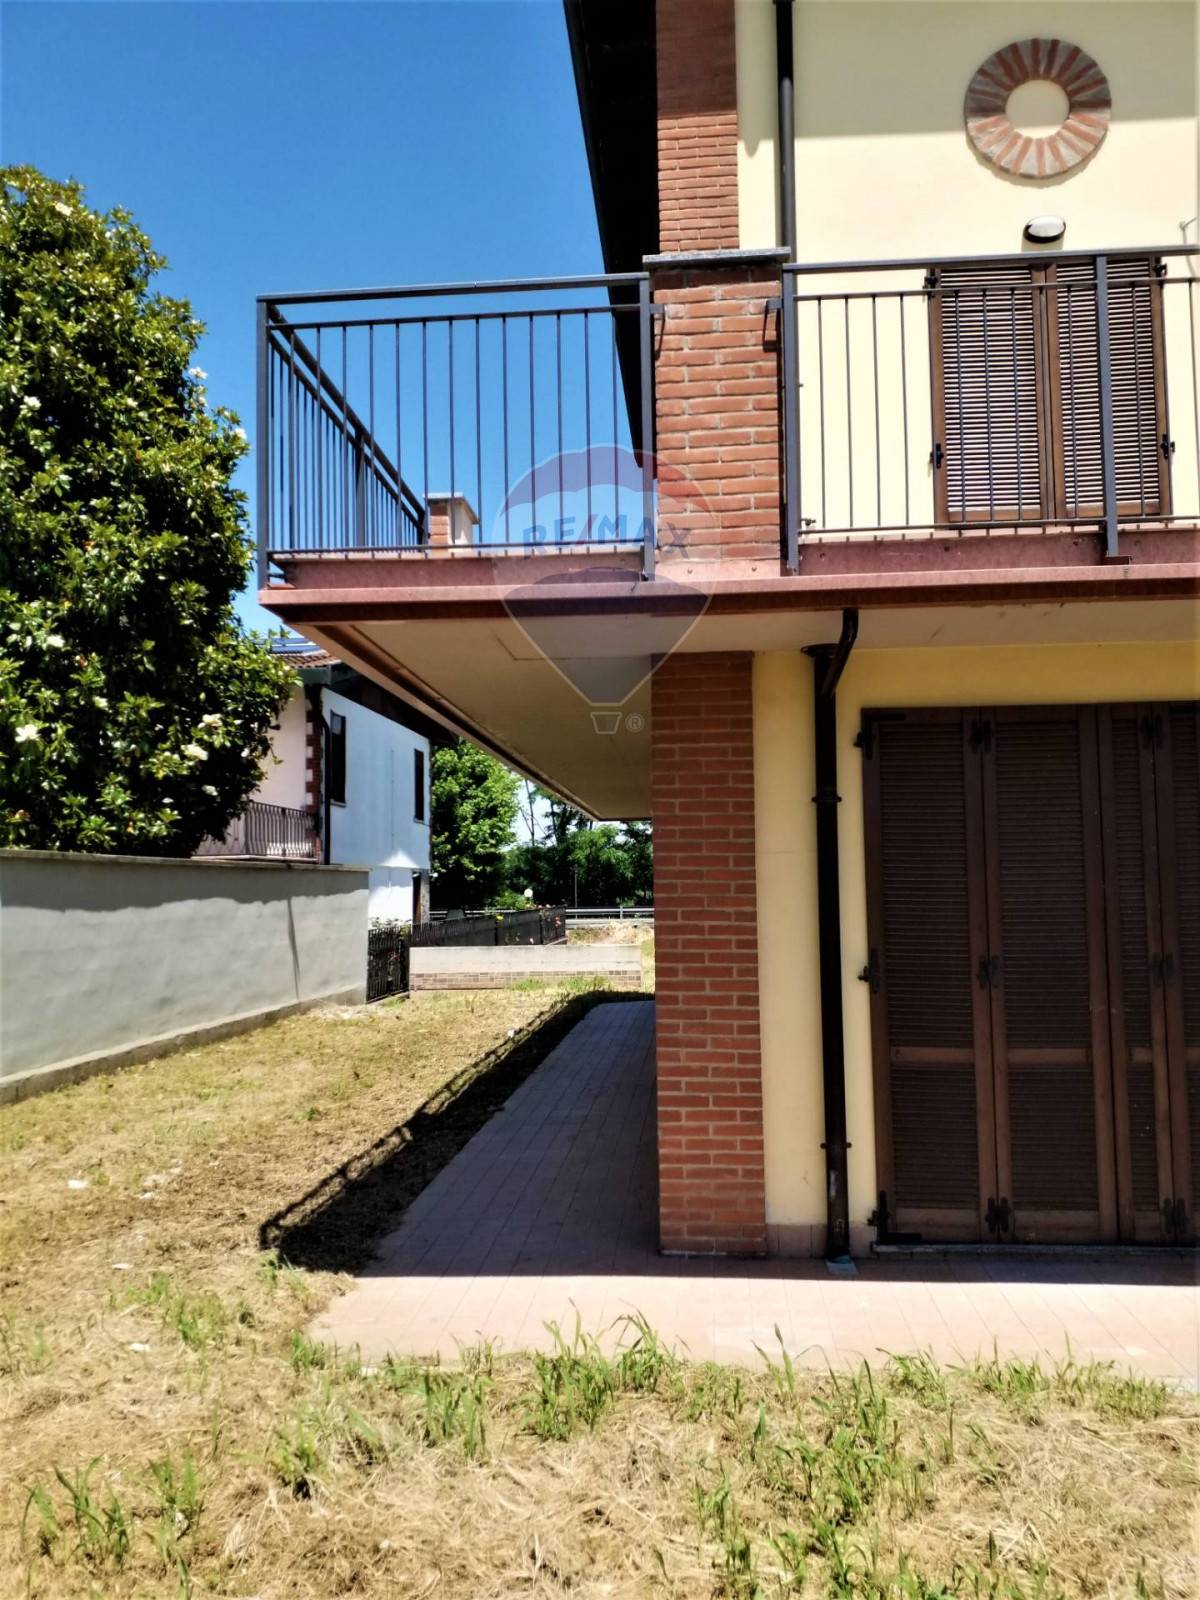 Villa in vendita a Bereguardo, 7 locali, prezzo € 450.000 | PortaleAgenzieImmobiliari.it